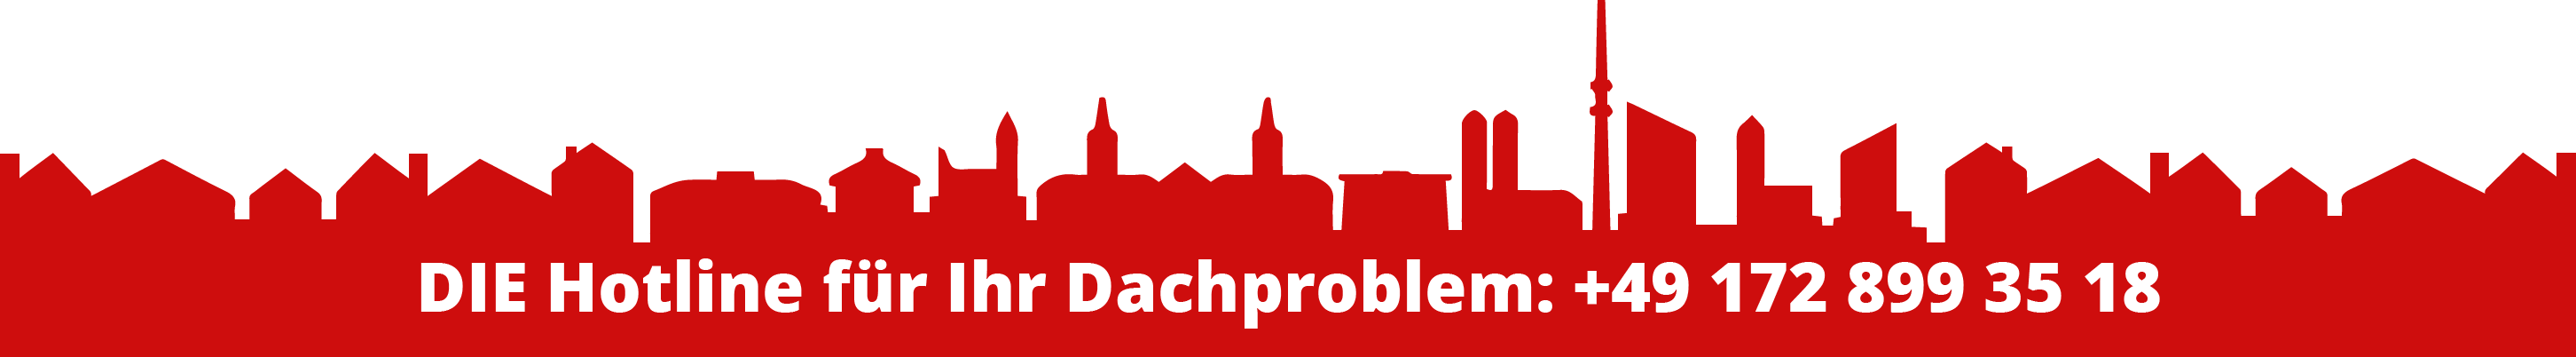 Die Hotline für Ihr Dachproblem oder Ihren Dachschaden in München: Peter Schubert, +49 172 899 35 18